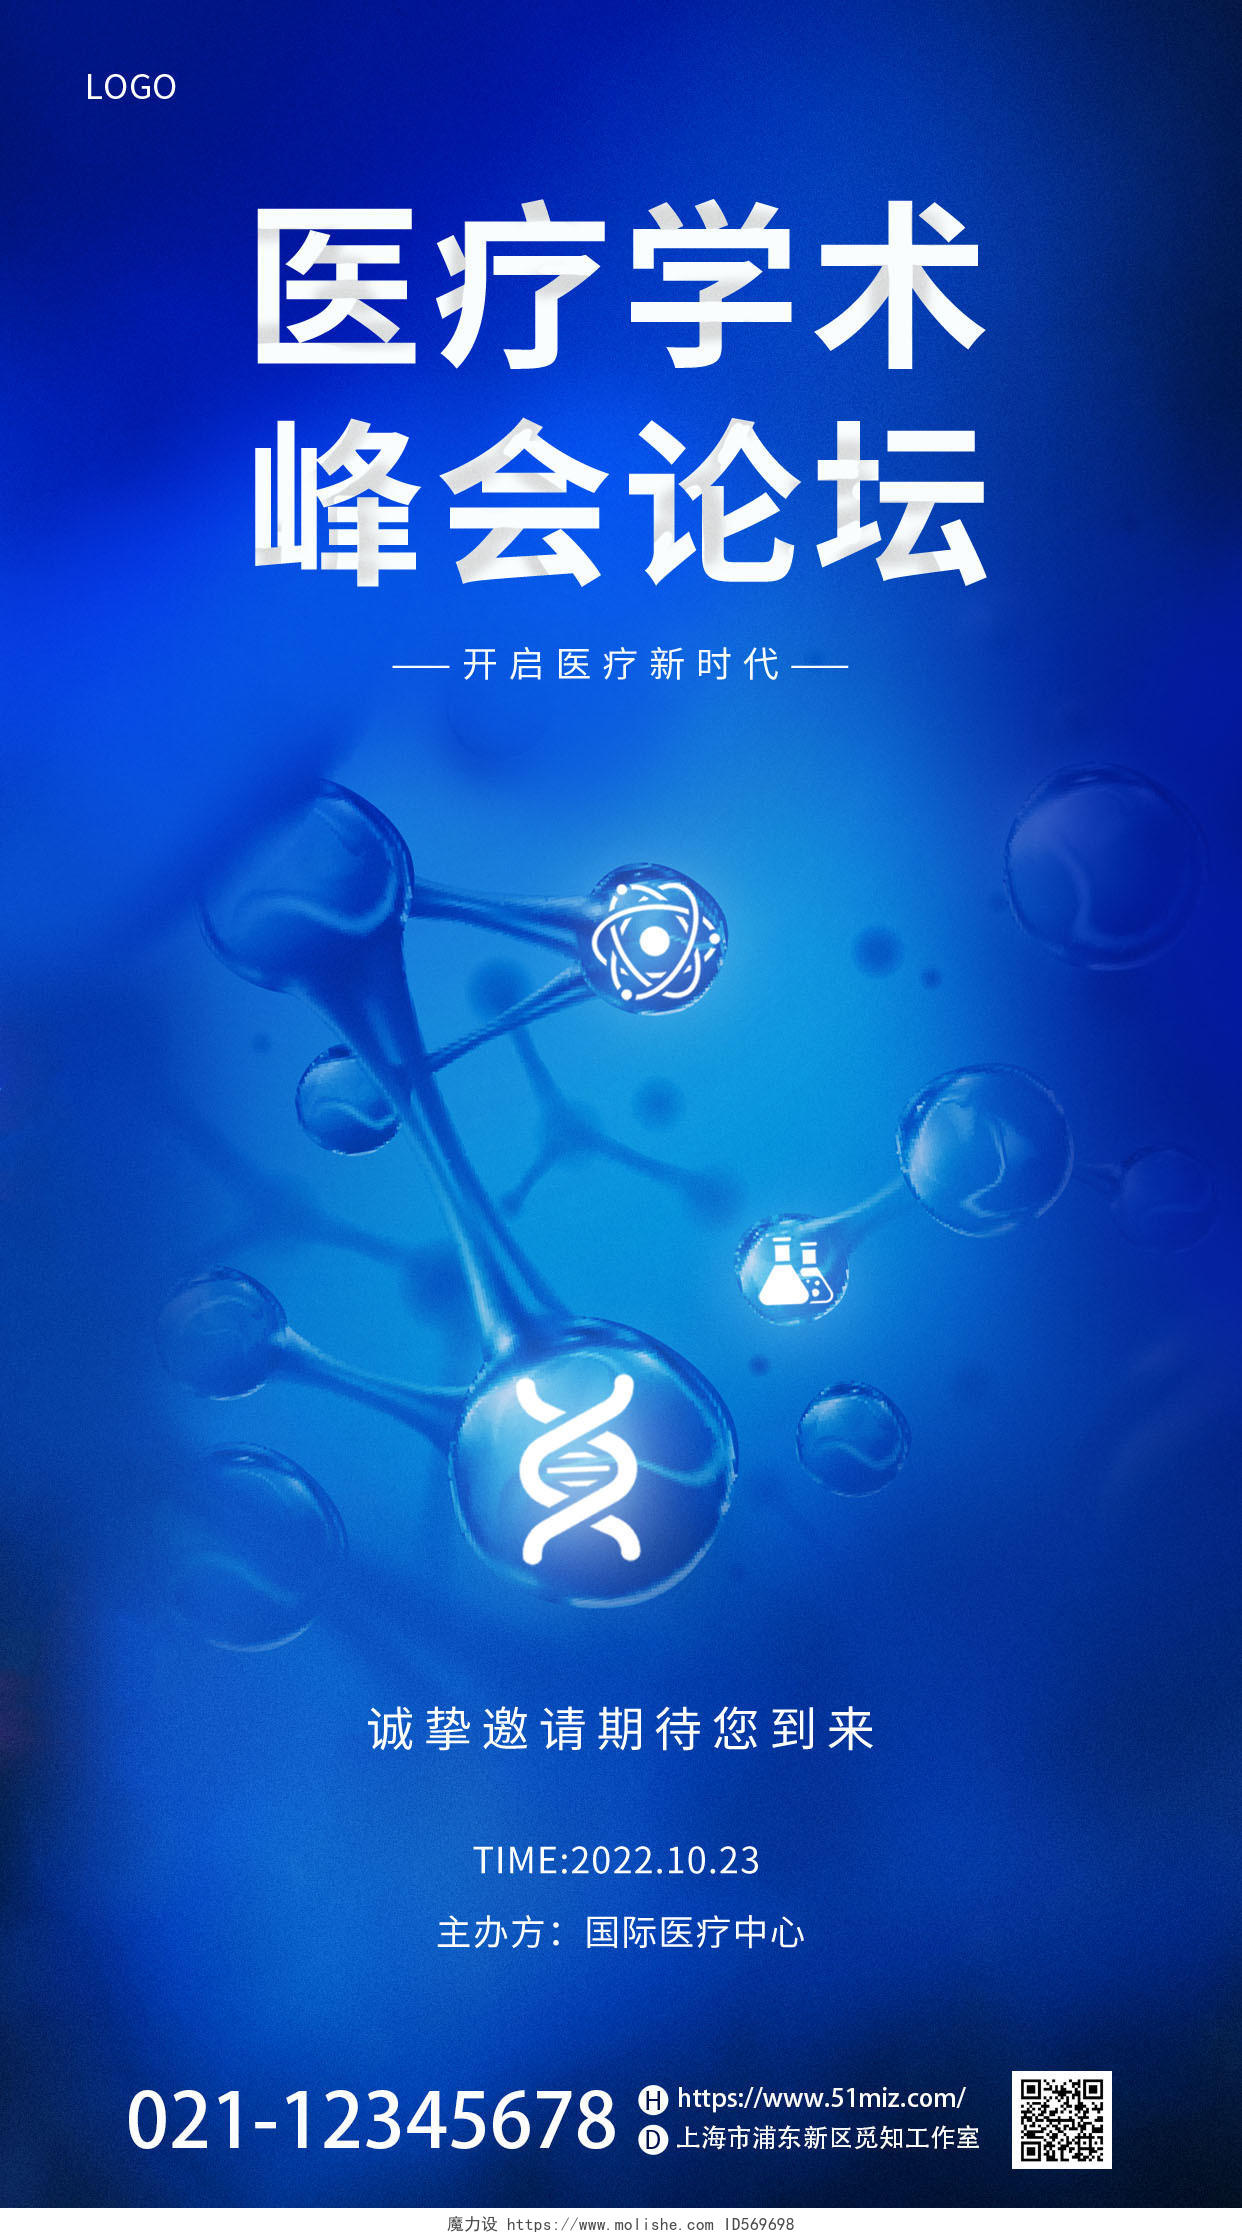 蓝色医疗基因生物细胞医学研医疗学术峰会论坛手机海报